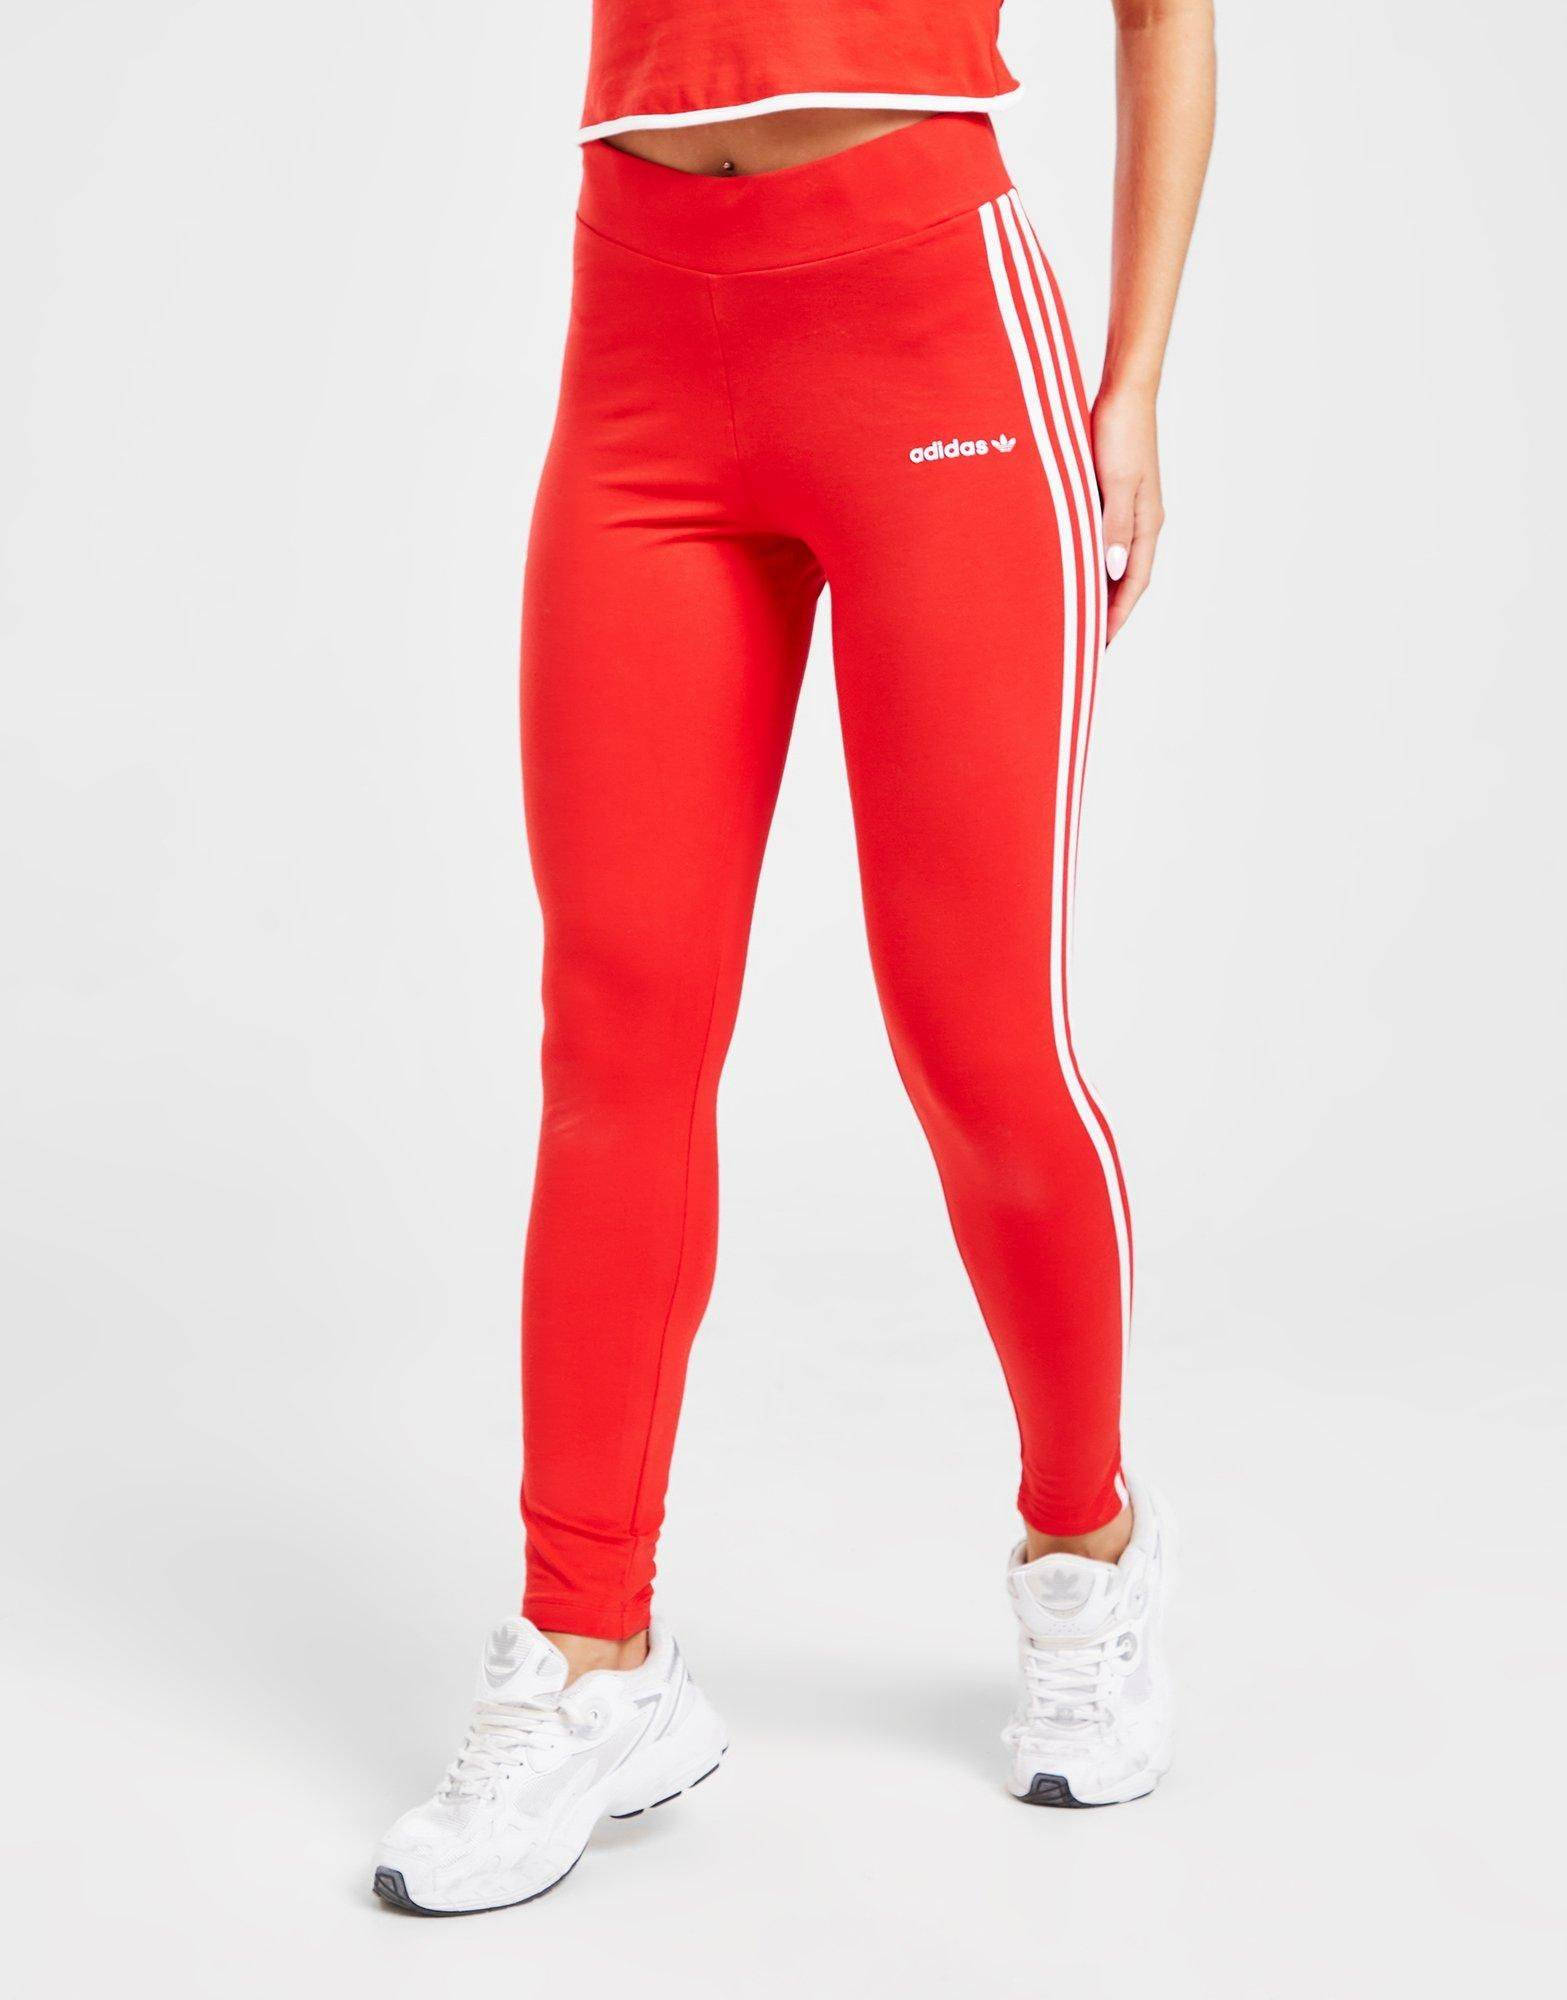 https://cms-cdn.thesolesupplier.co.uk/2022/08/adidas-originals-linear-high-waist-leggings-red-front.jpg